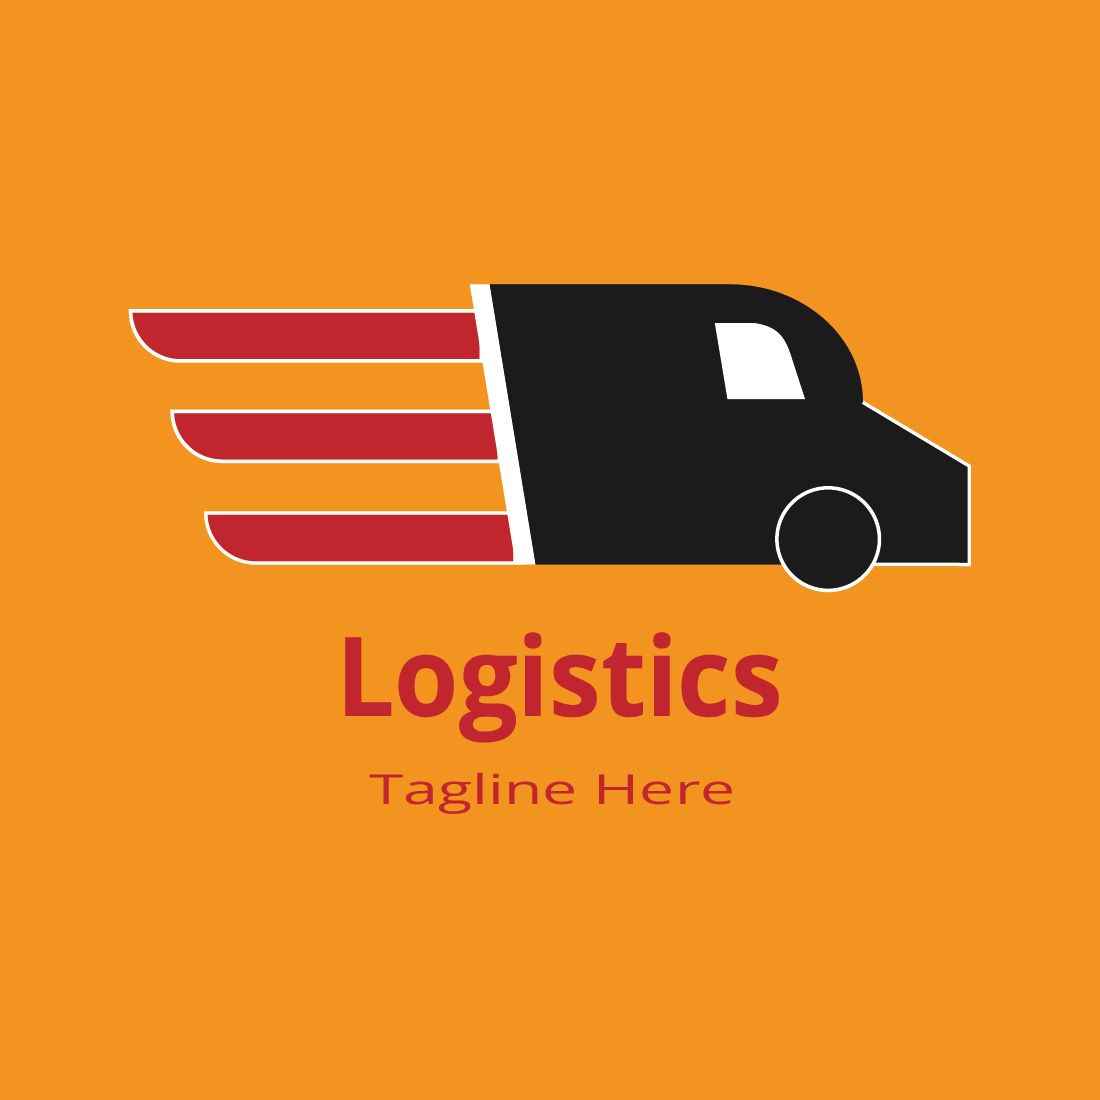 Logistics Logo preview image.